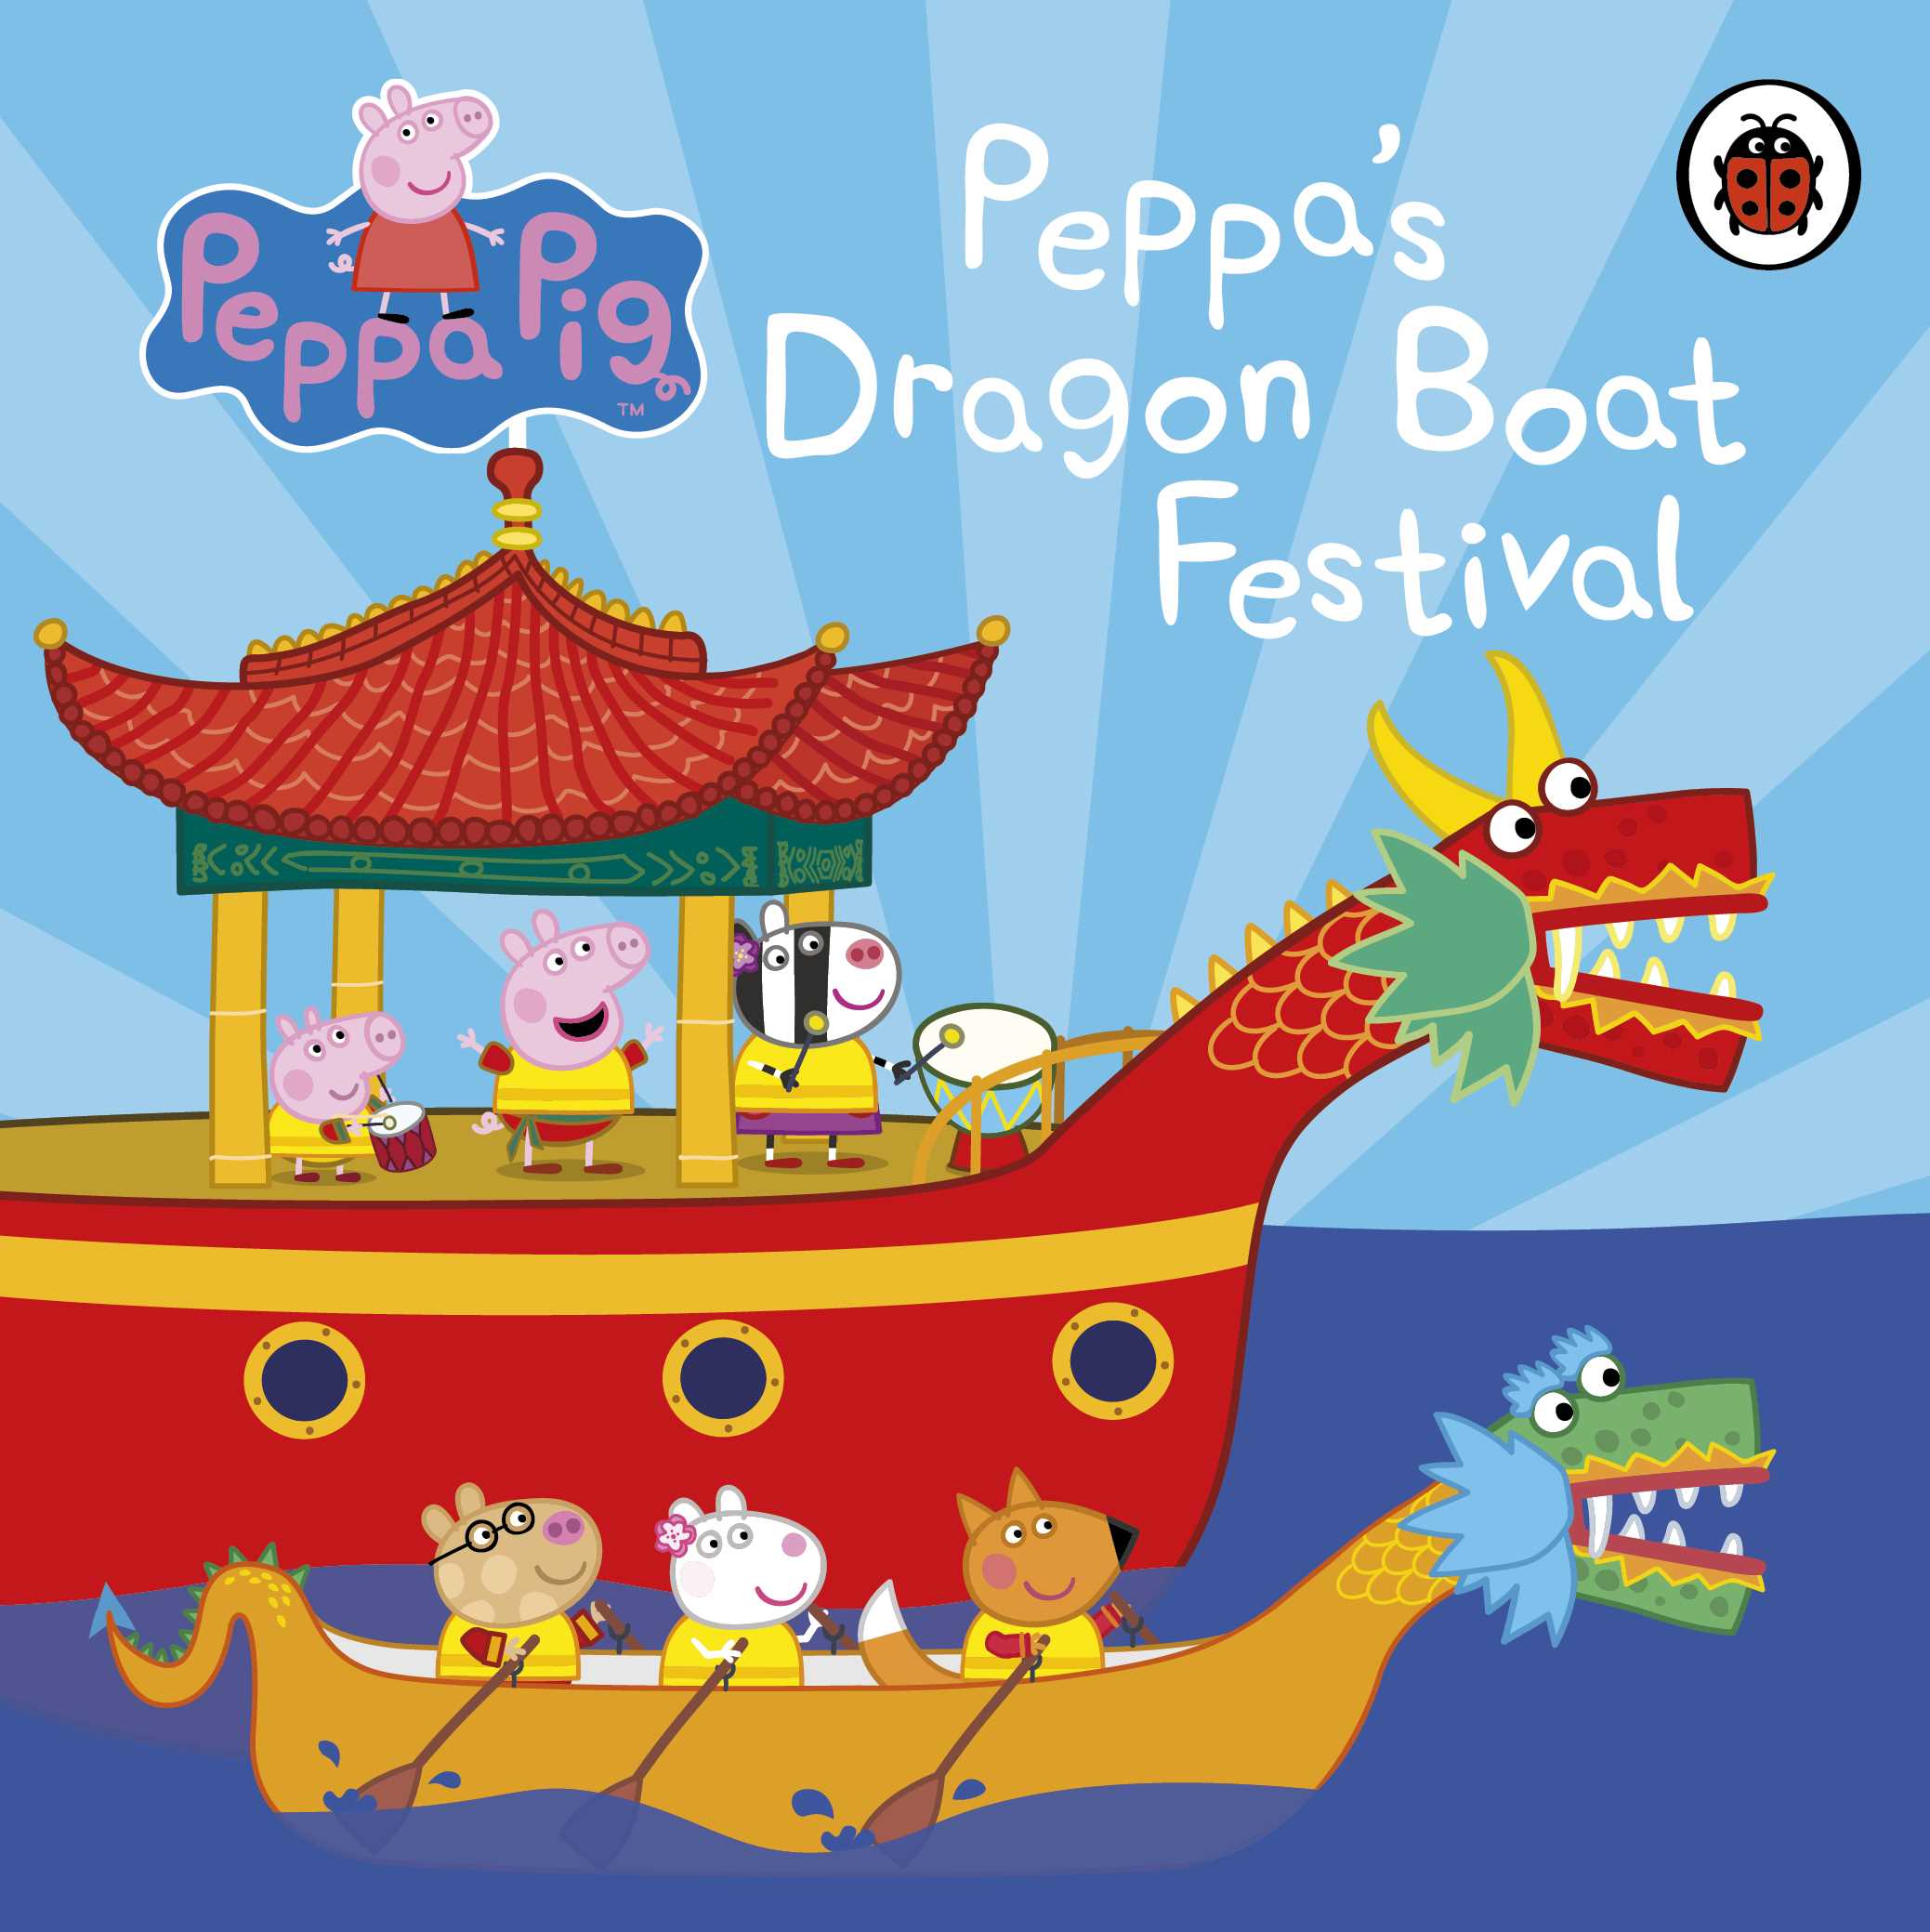 Peppa's Dragon Boat Race